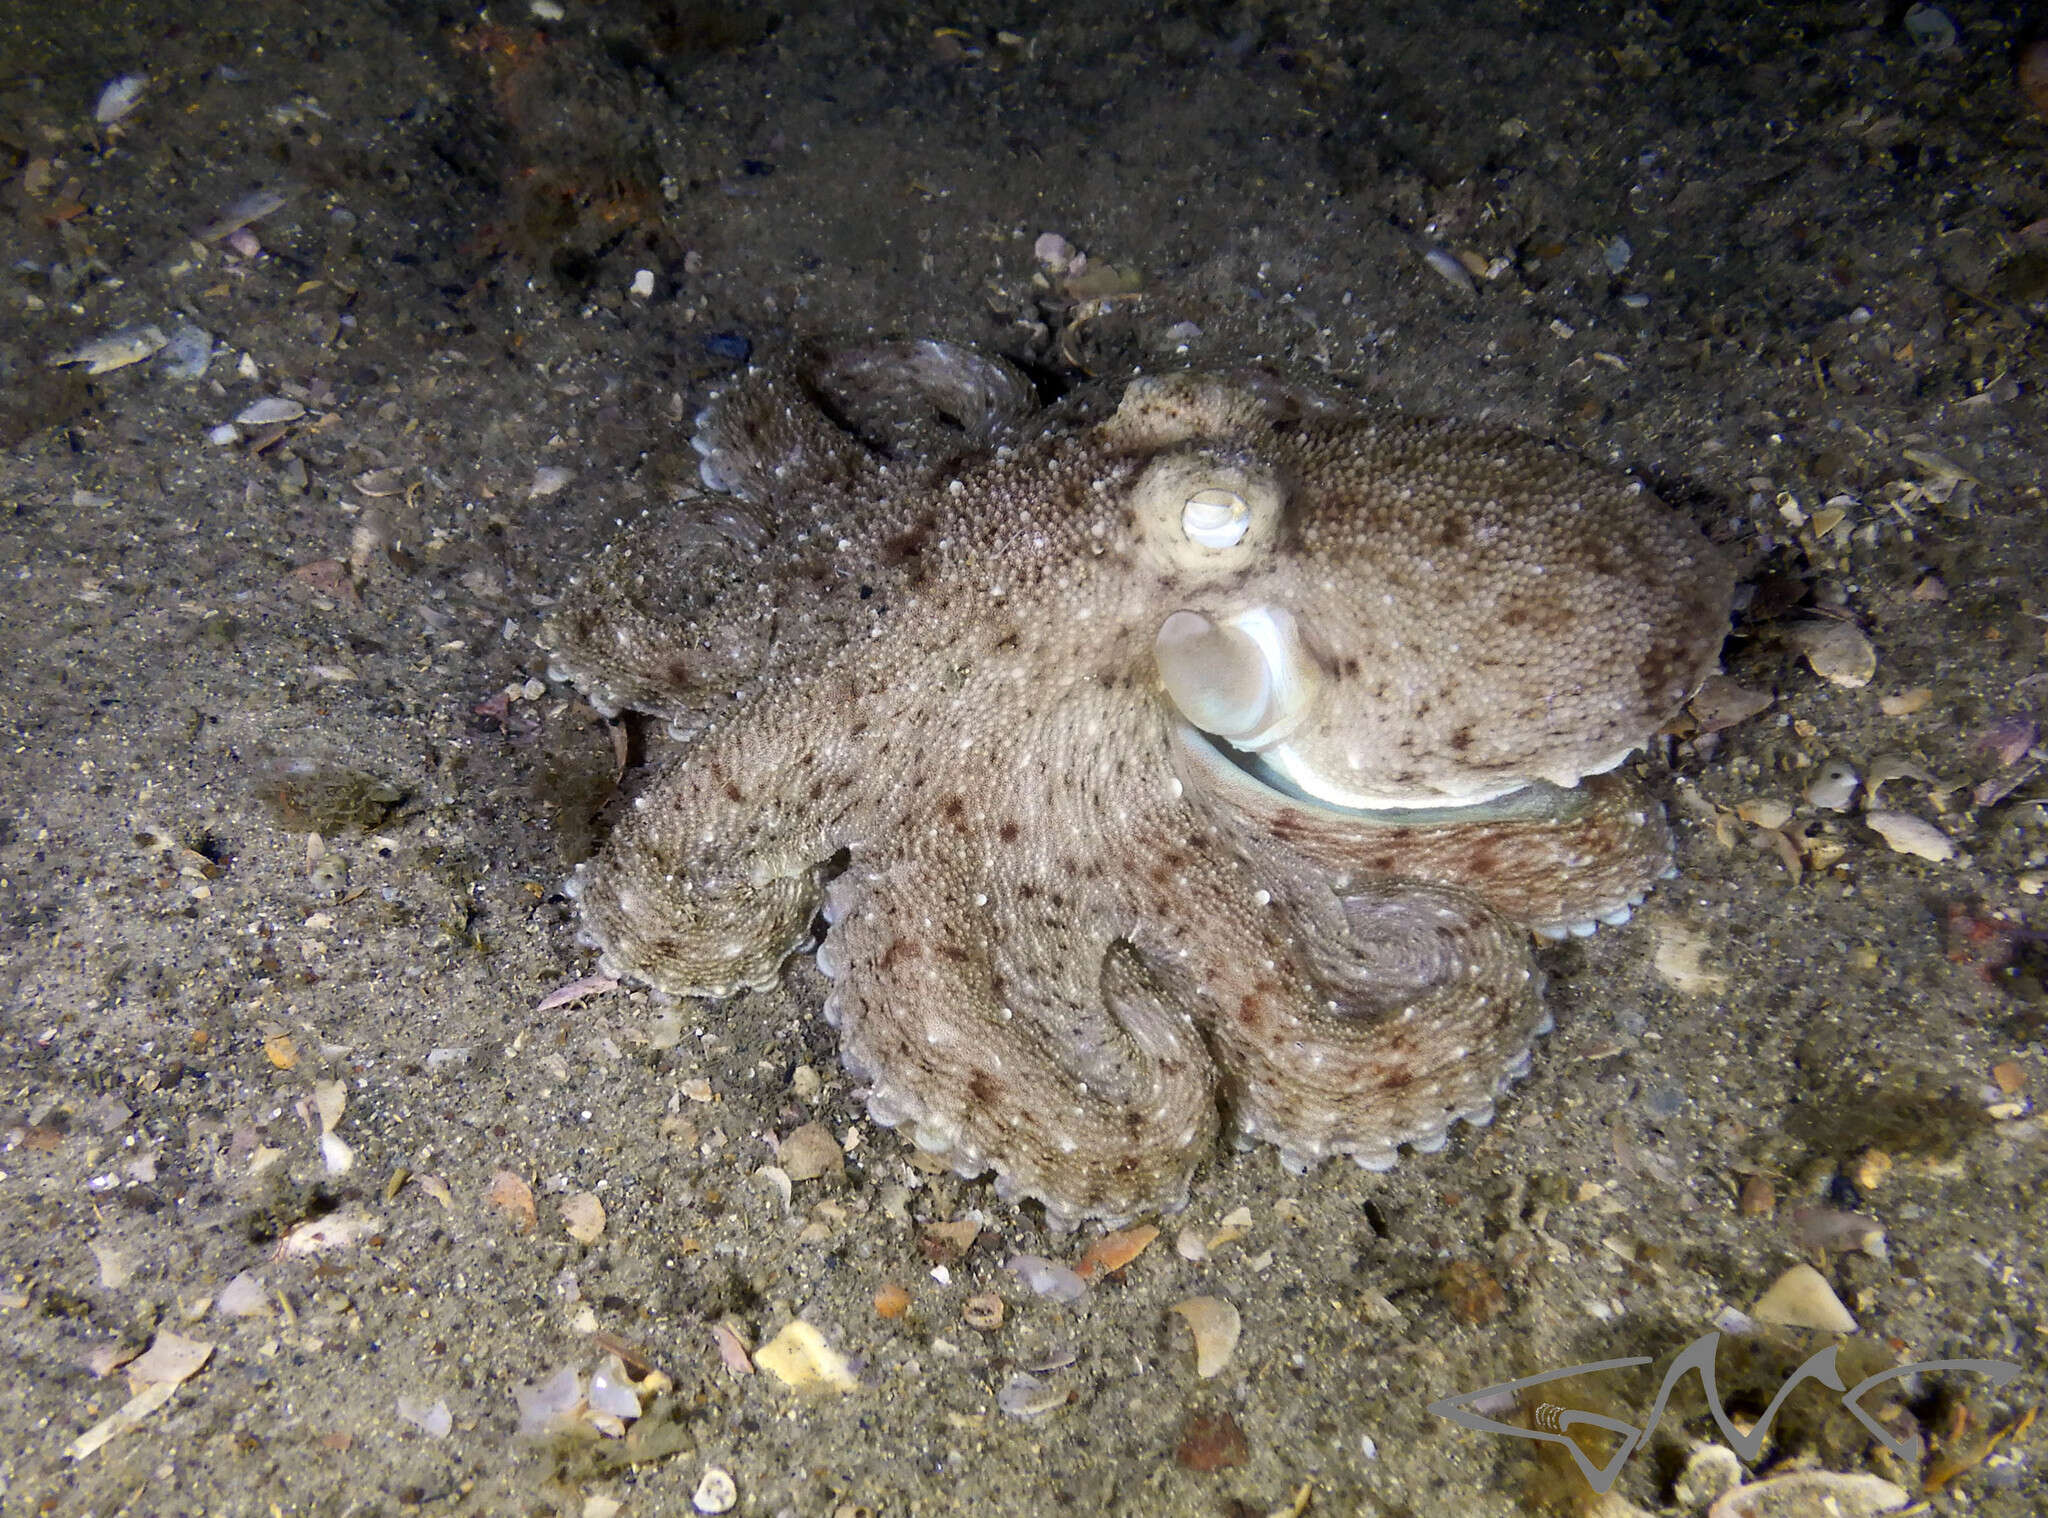 Image of Octopus australis Hoyle 1885